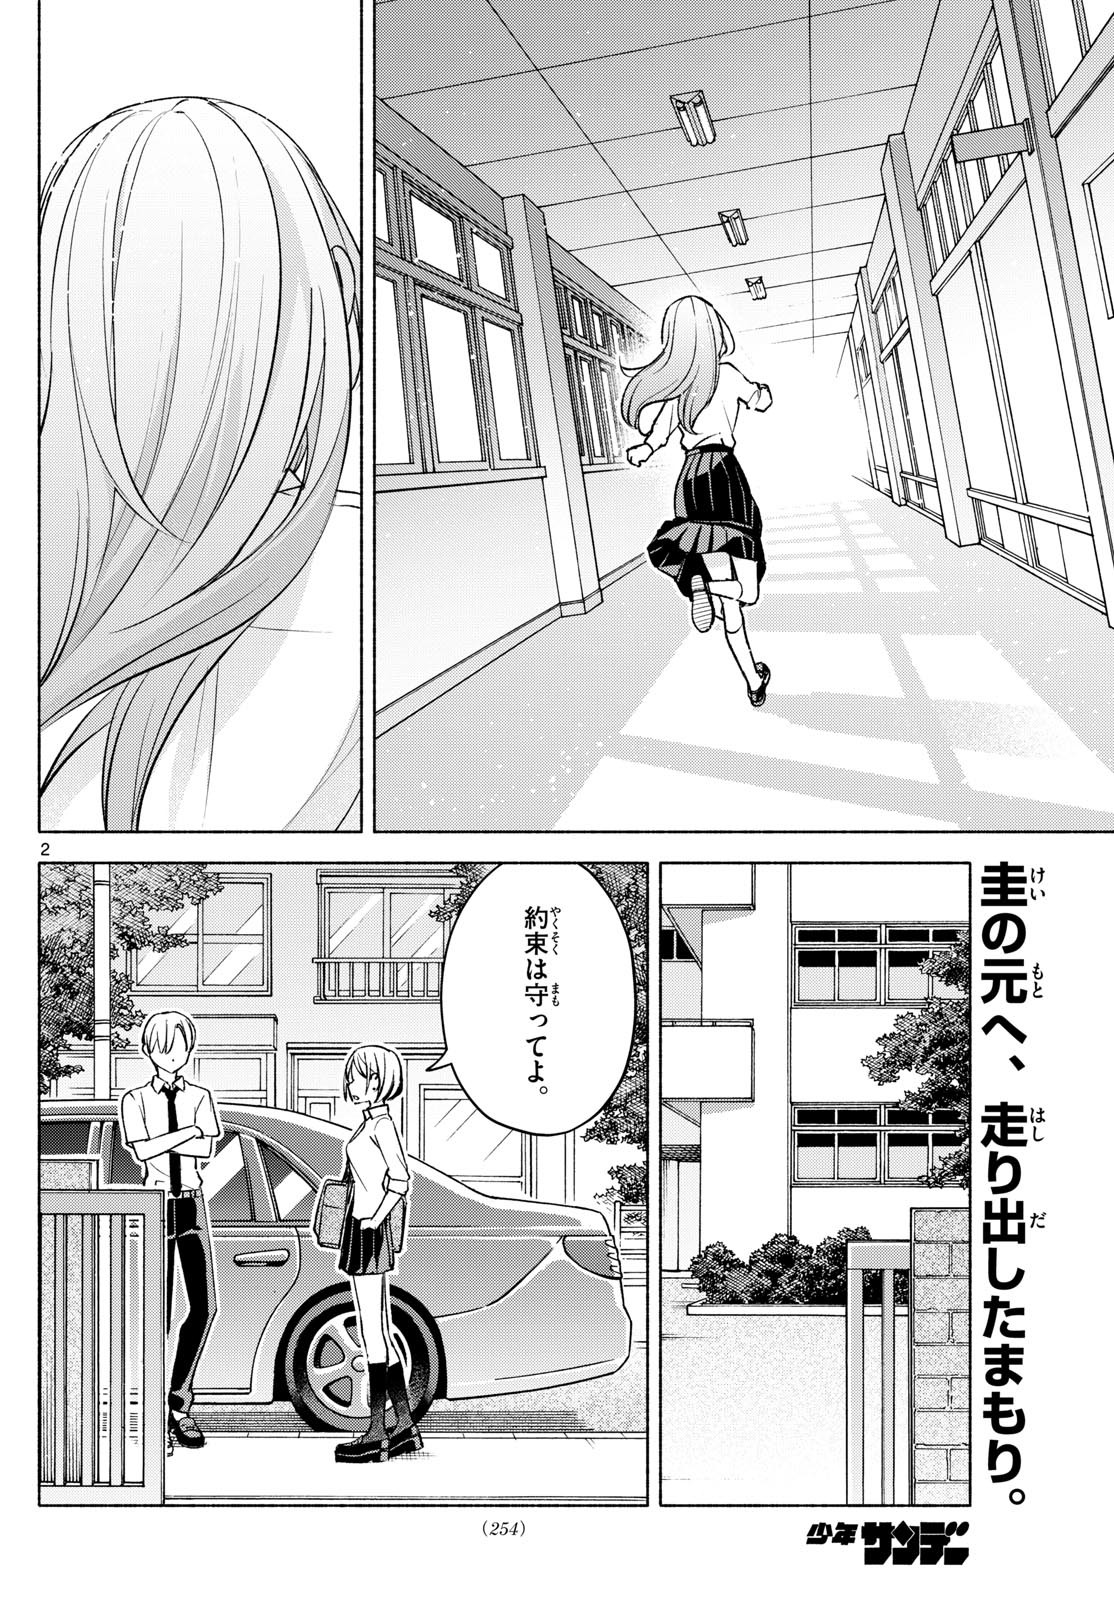 Kimi to Warui Koto ga Shitai - Chapter 040 - Page 2